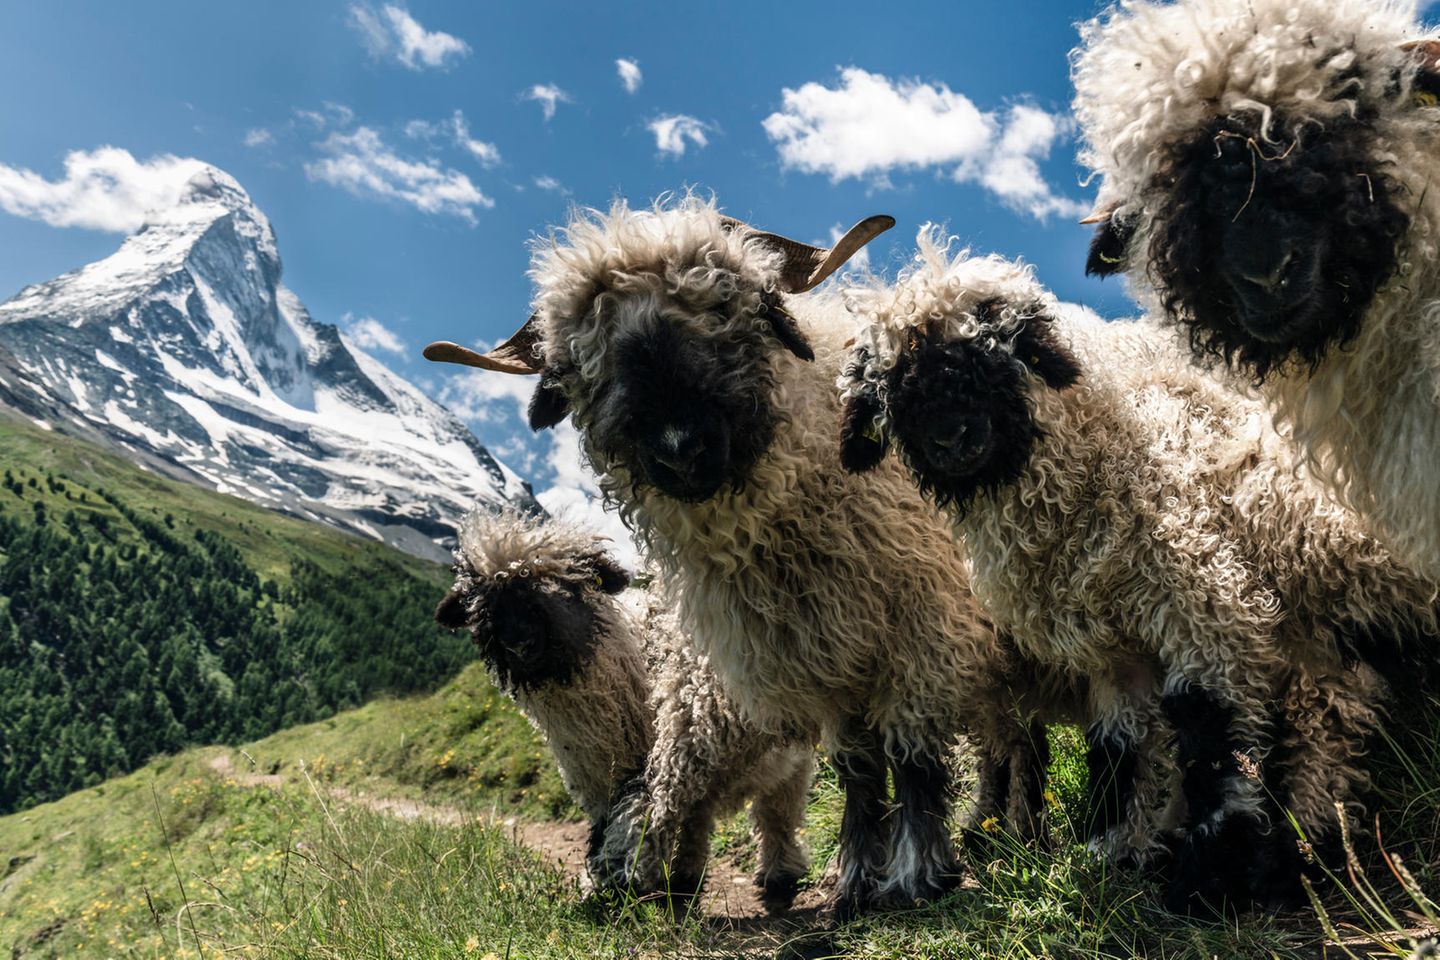 14.09.2021  "Zermatt: Diese gesichtslosen Gesellen sind wohl der Inbegriff eines süßen Schafes. Es hat allerdings eine ganze Weile gedauert, bis sie dann auch so standen und alles passte"  Kamera: Sony alpha 7 R III, Canon EF L 24-70 f4